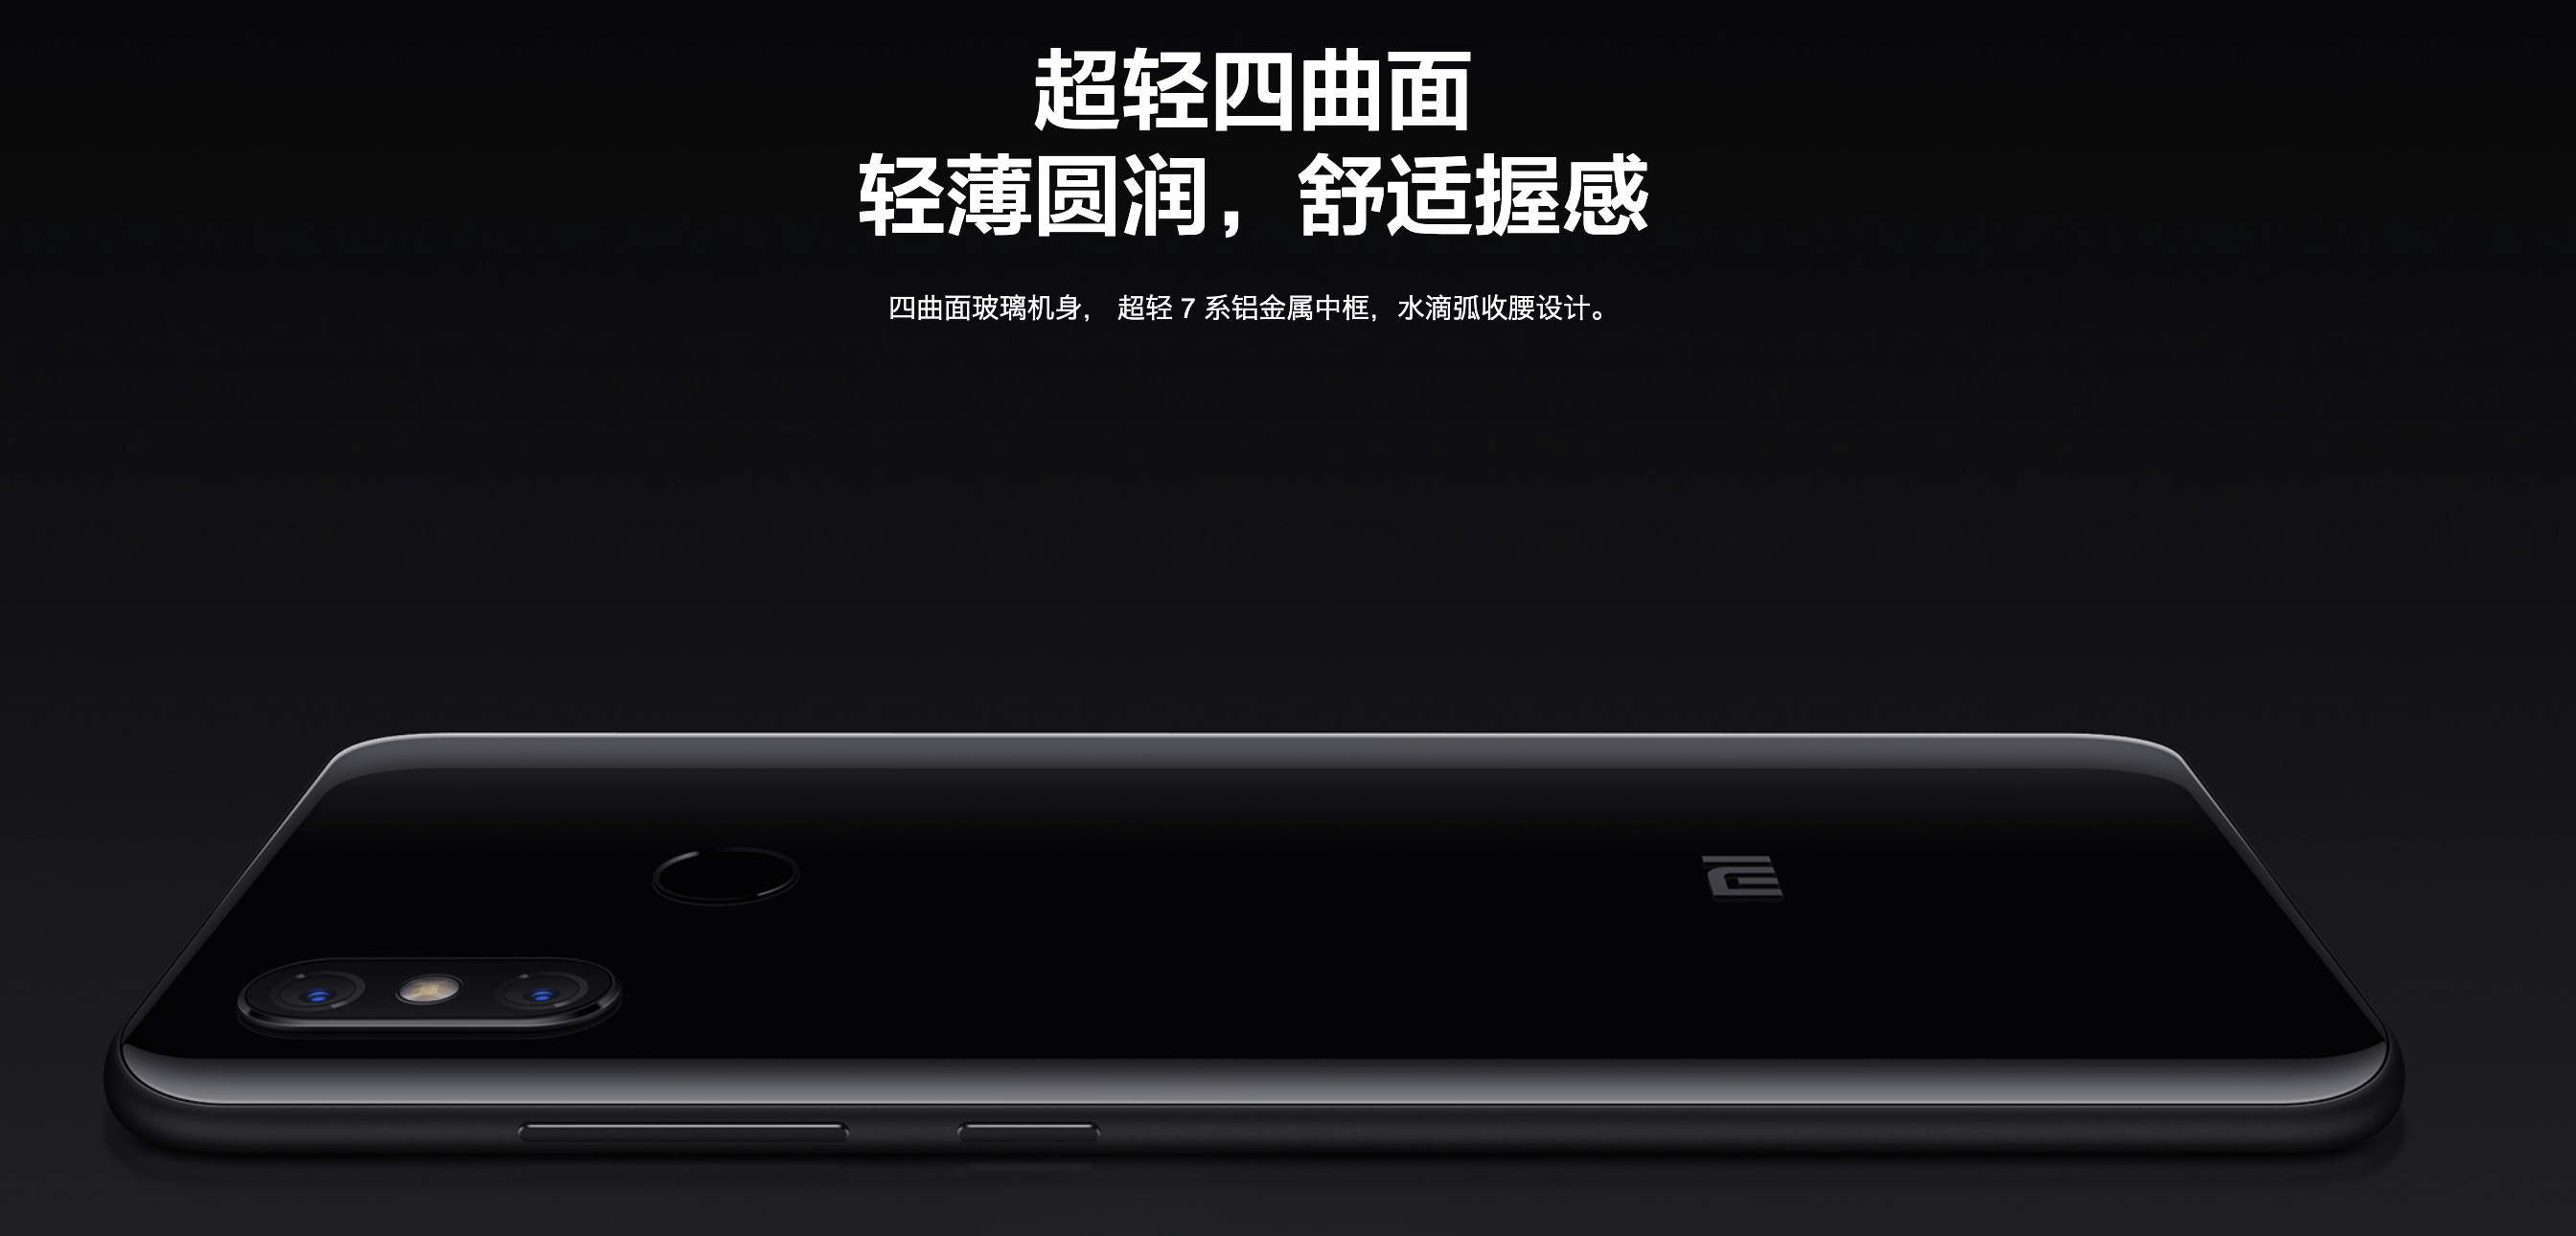 Xiaomi Mi 8の筐体